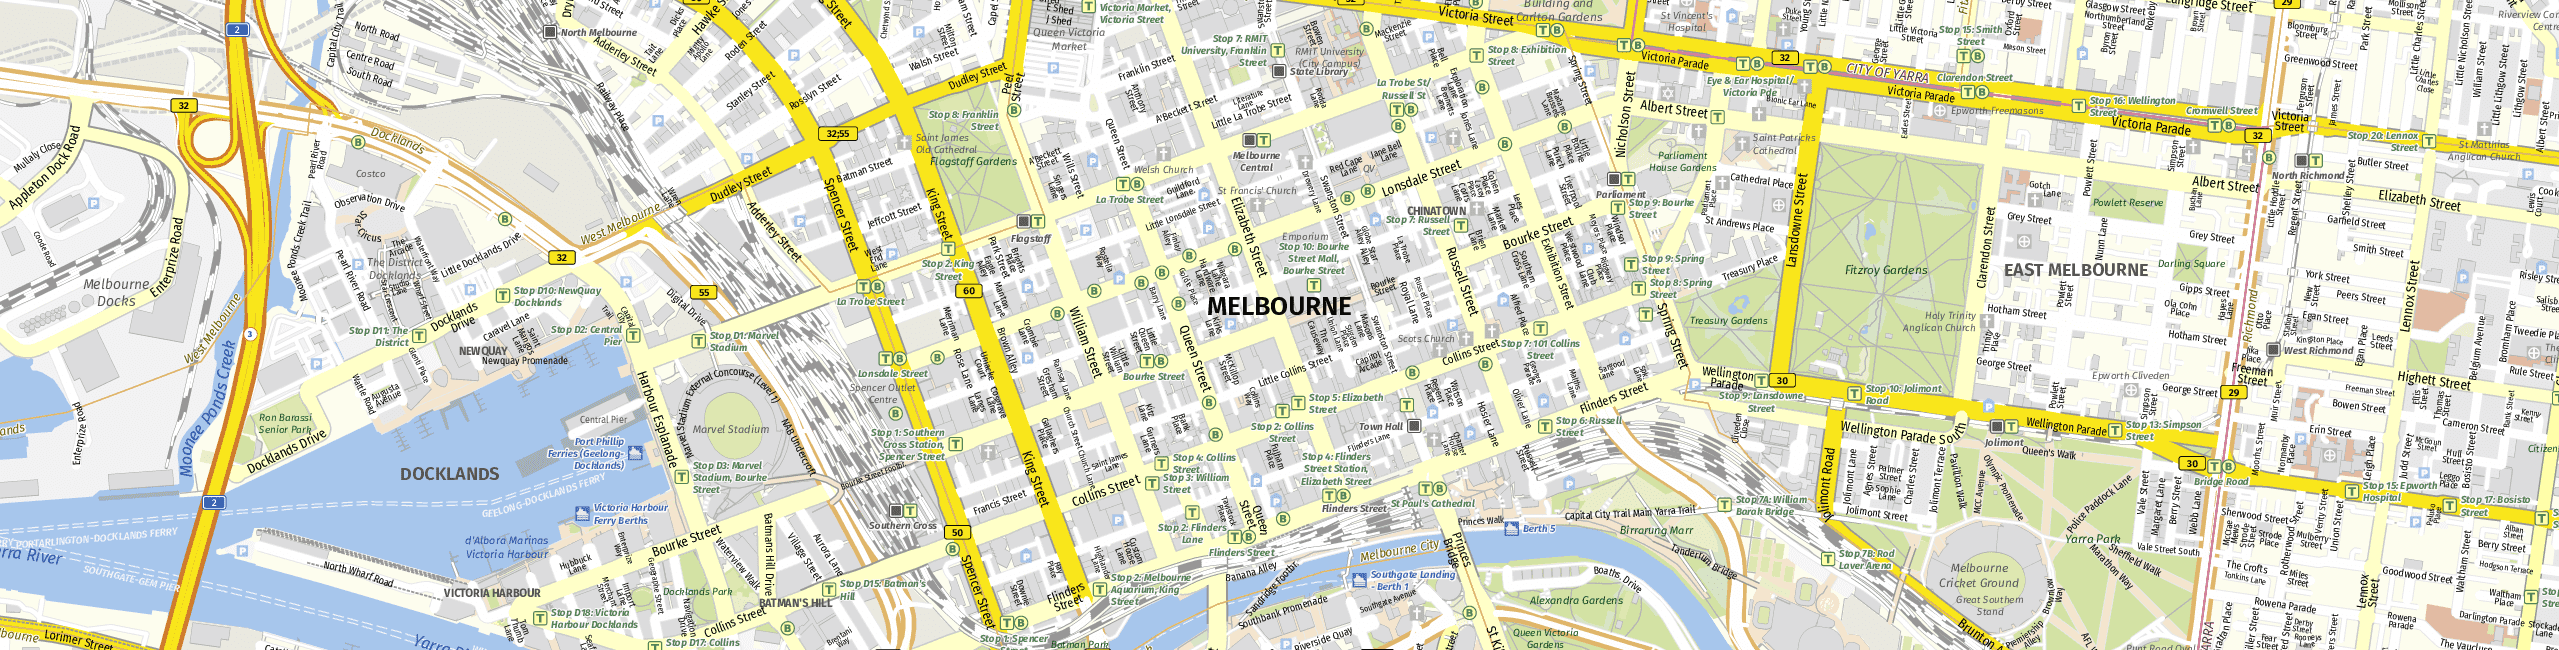 Stadtplan Melbourne zum Downloaden.